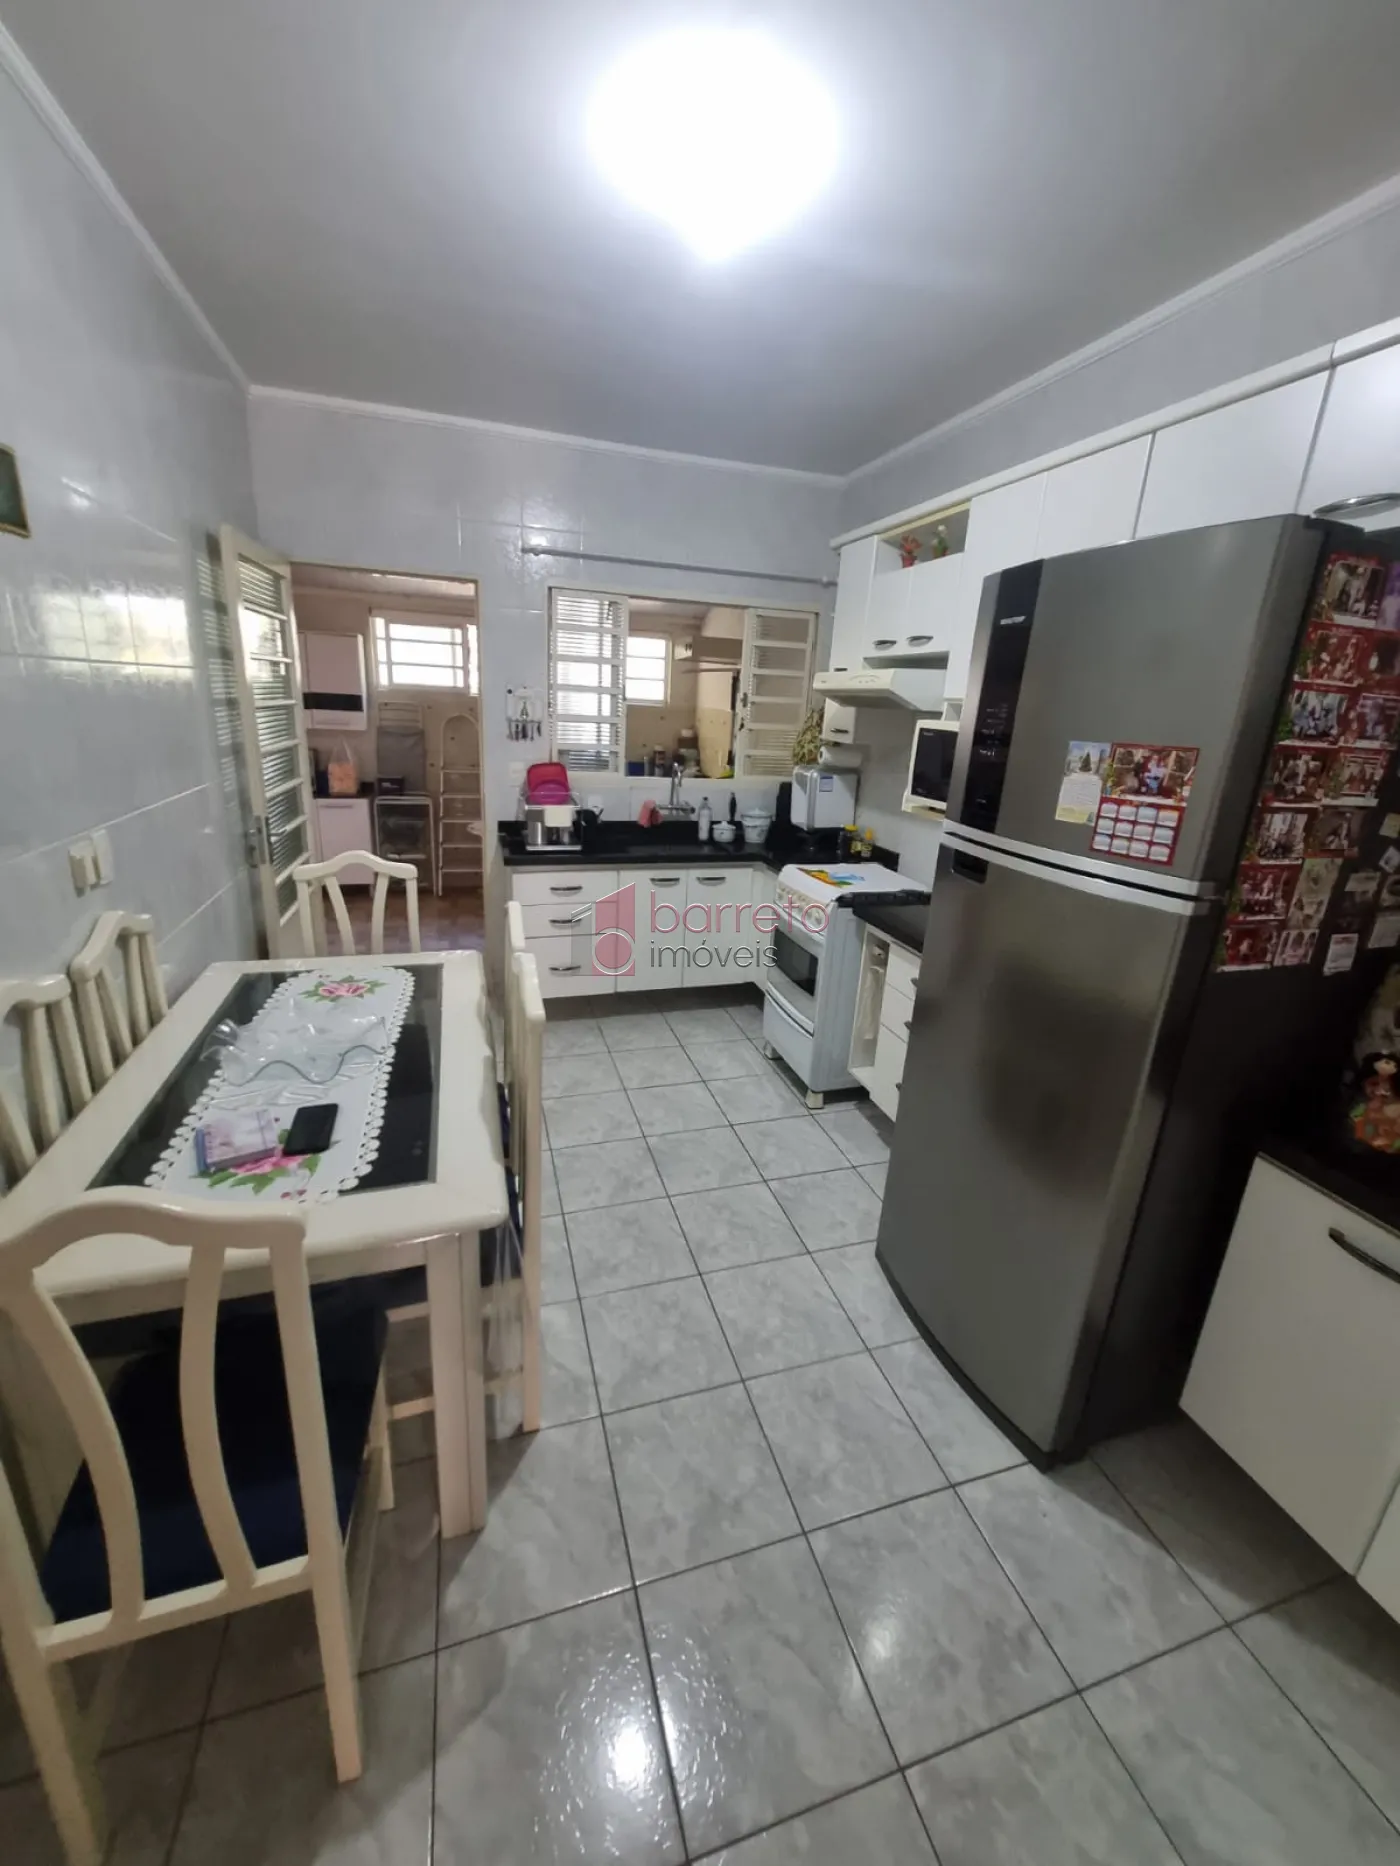 Comprar Casa / Térrea em Jundiaí R$ 450.000,00 - Foto 4